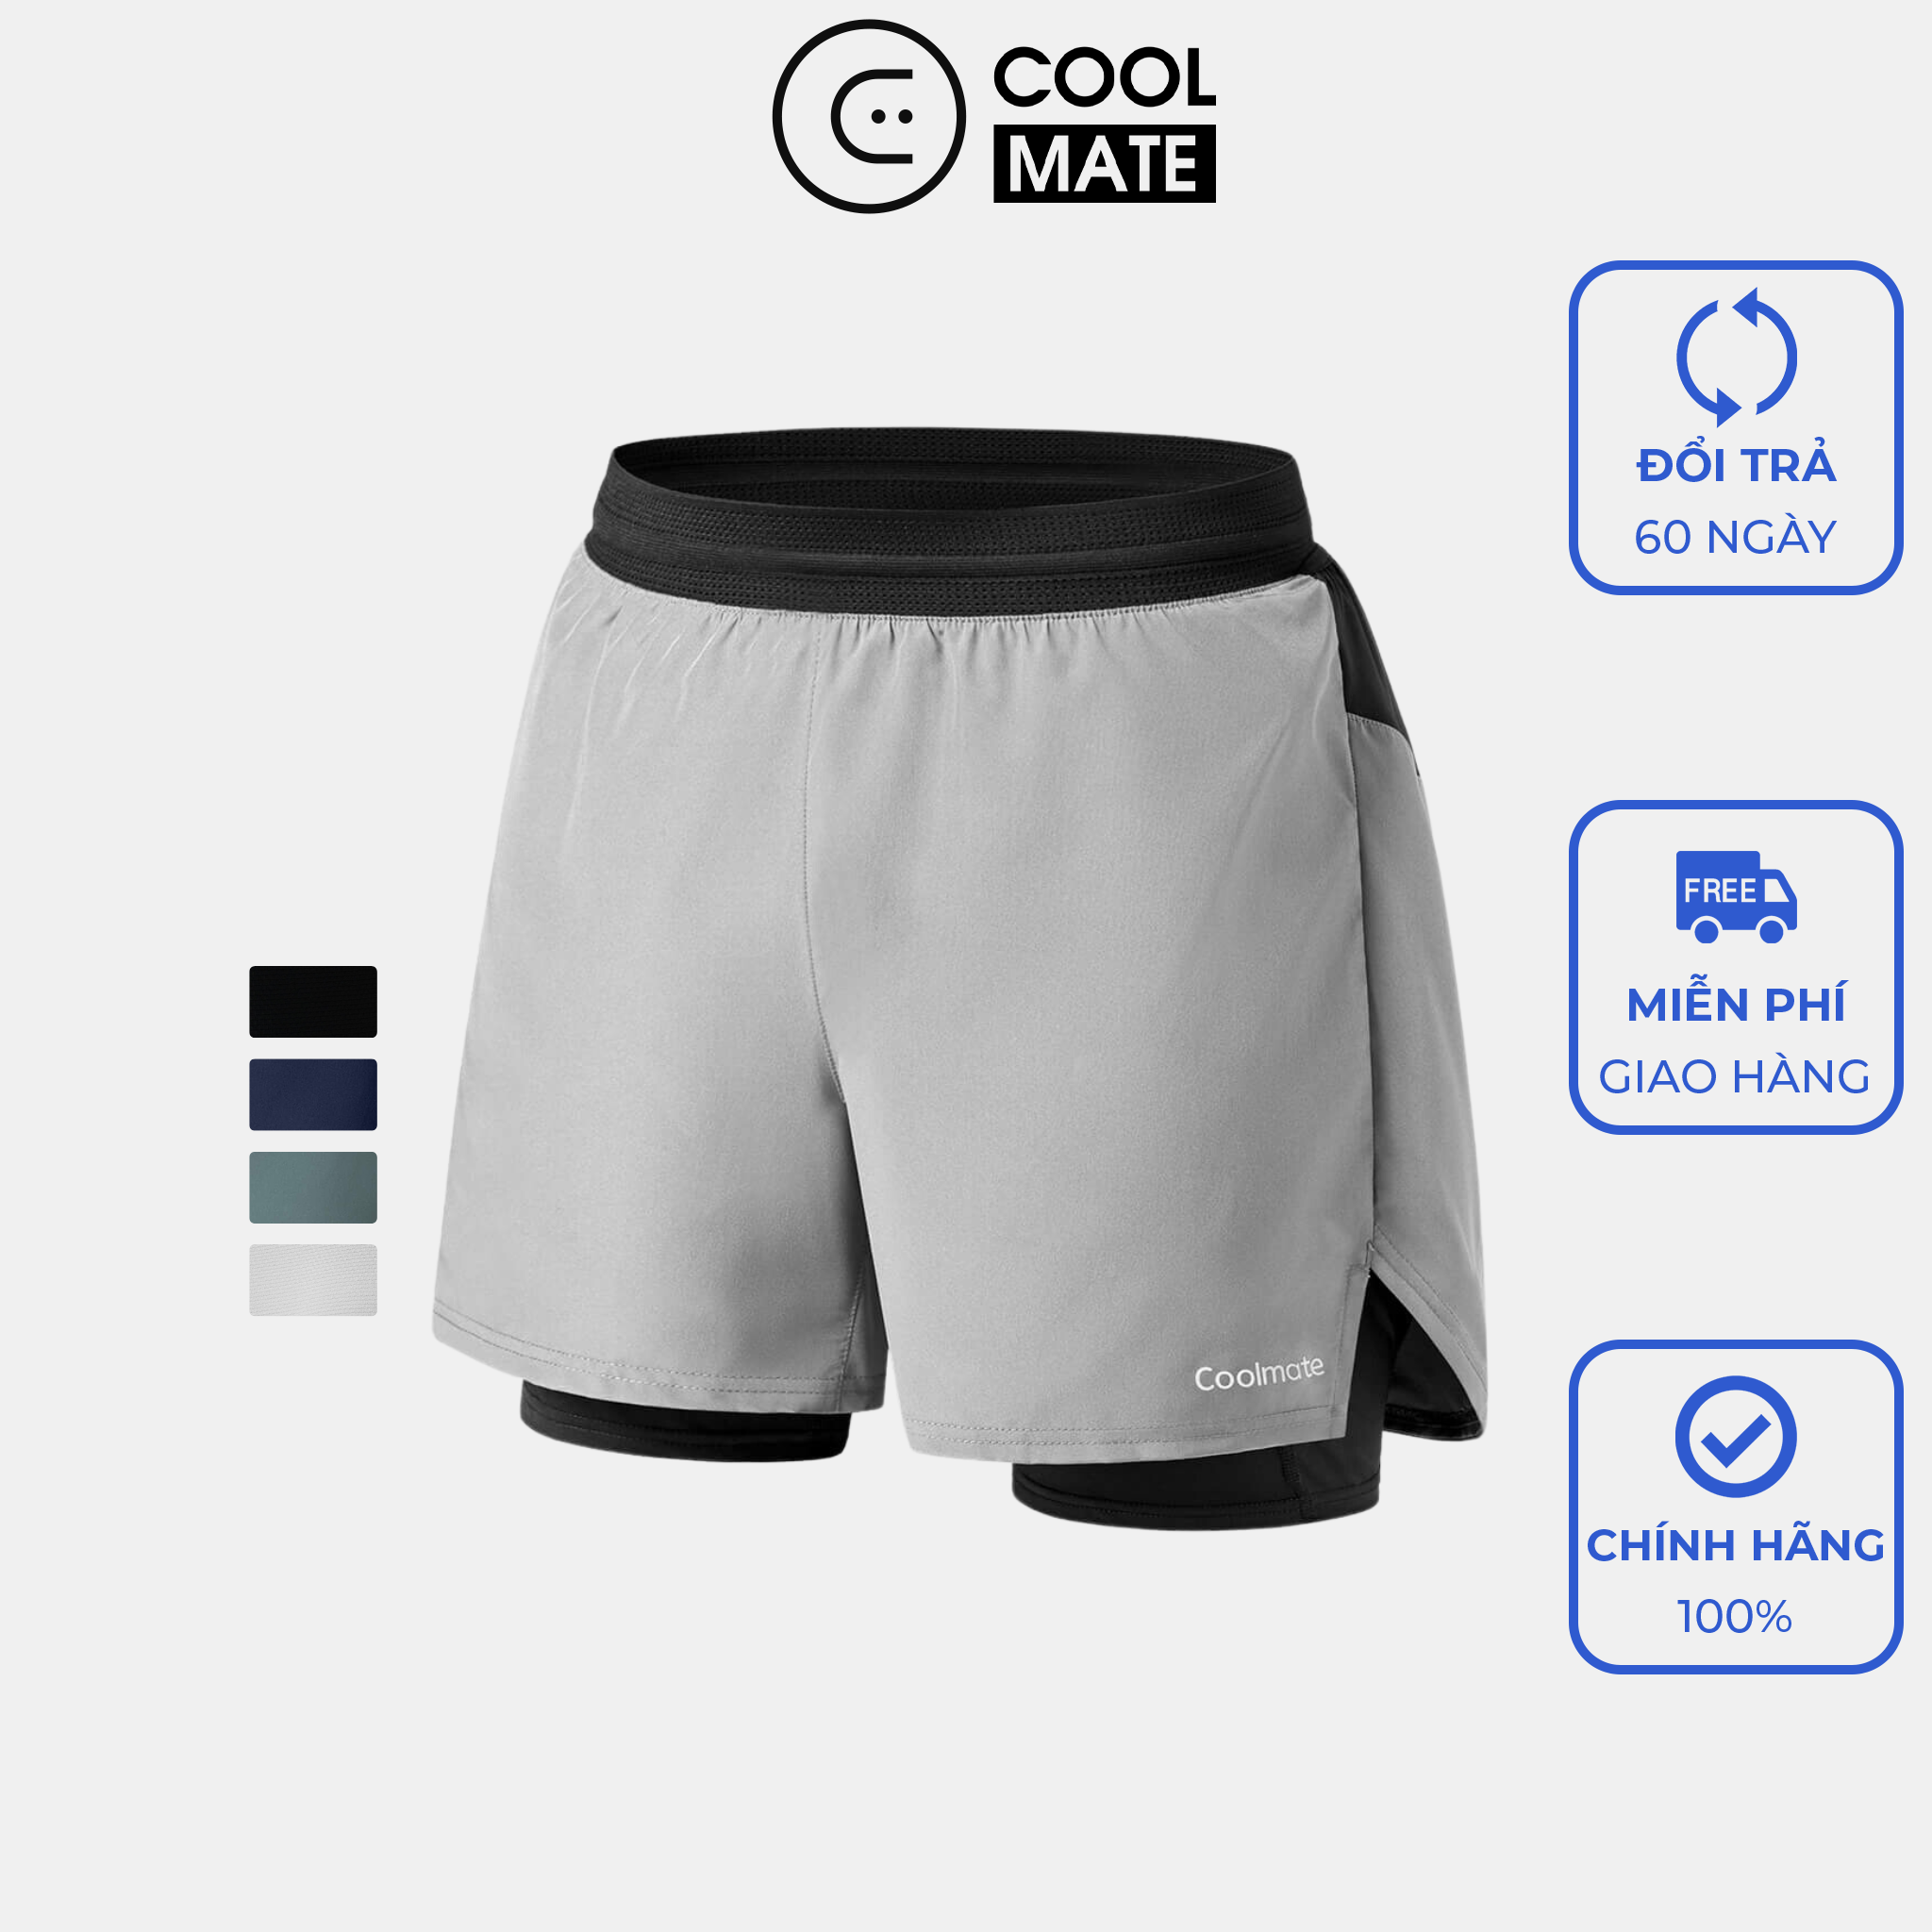 Quần shorts chạy bộ 2 lớp Essential Fast & Free Run - Thương hiệu Coolmate